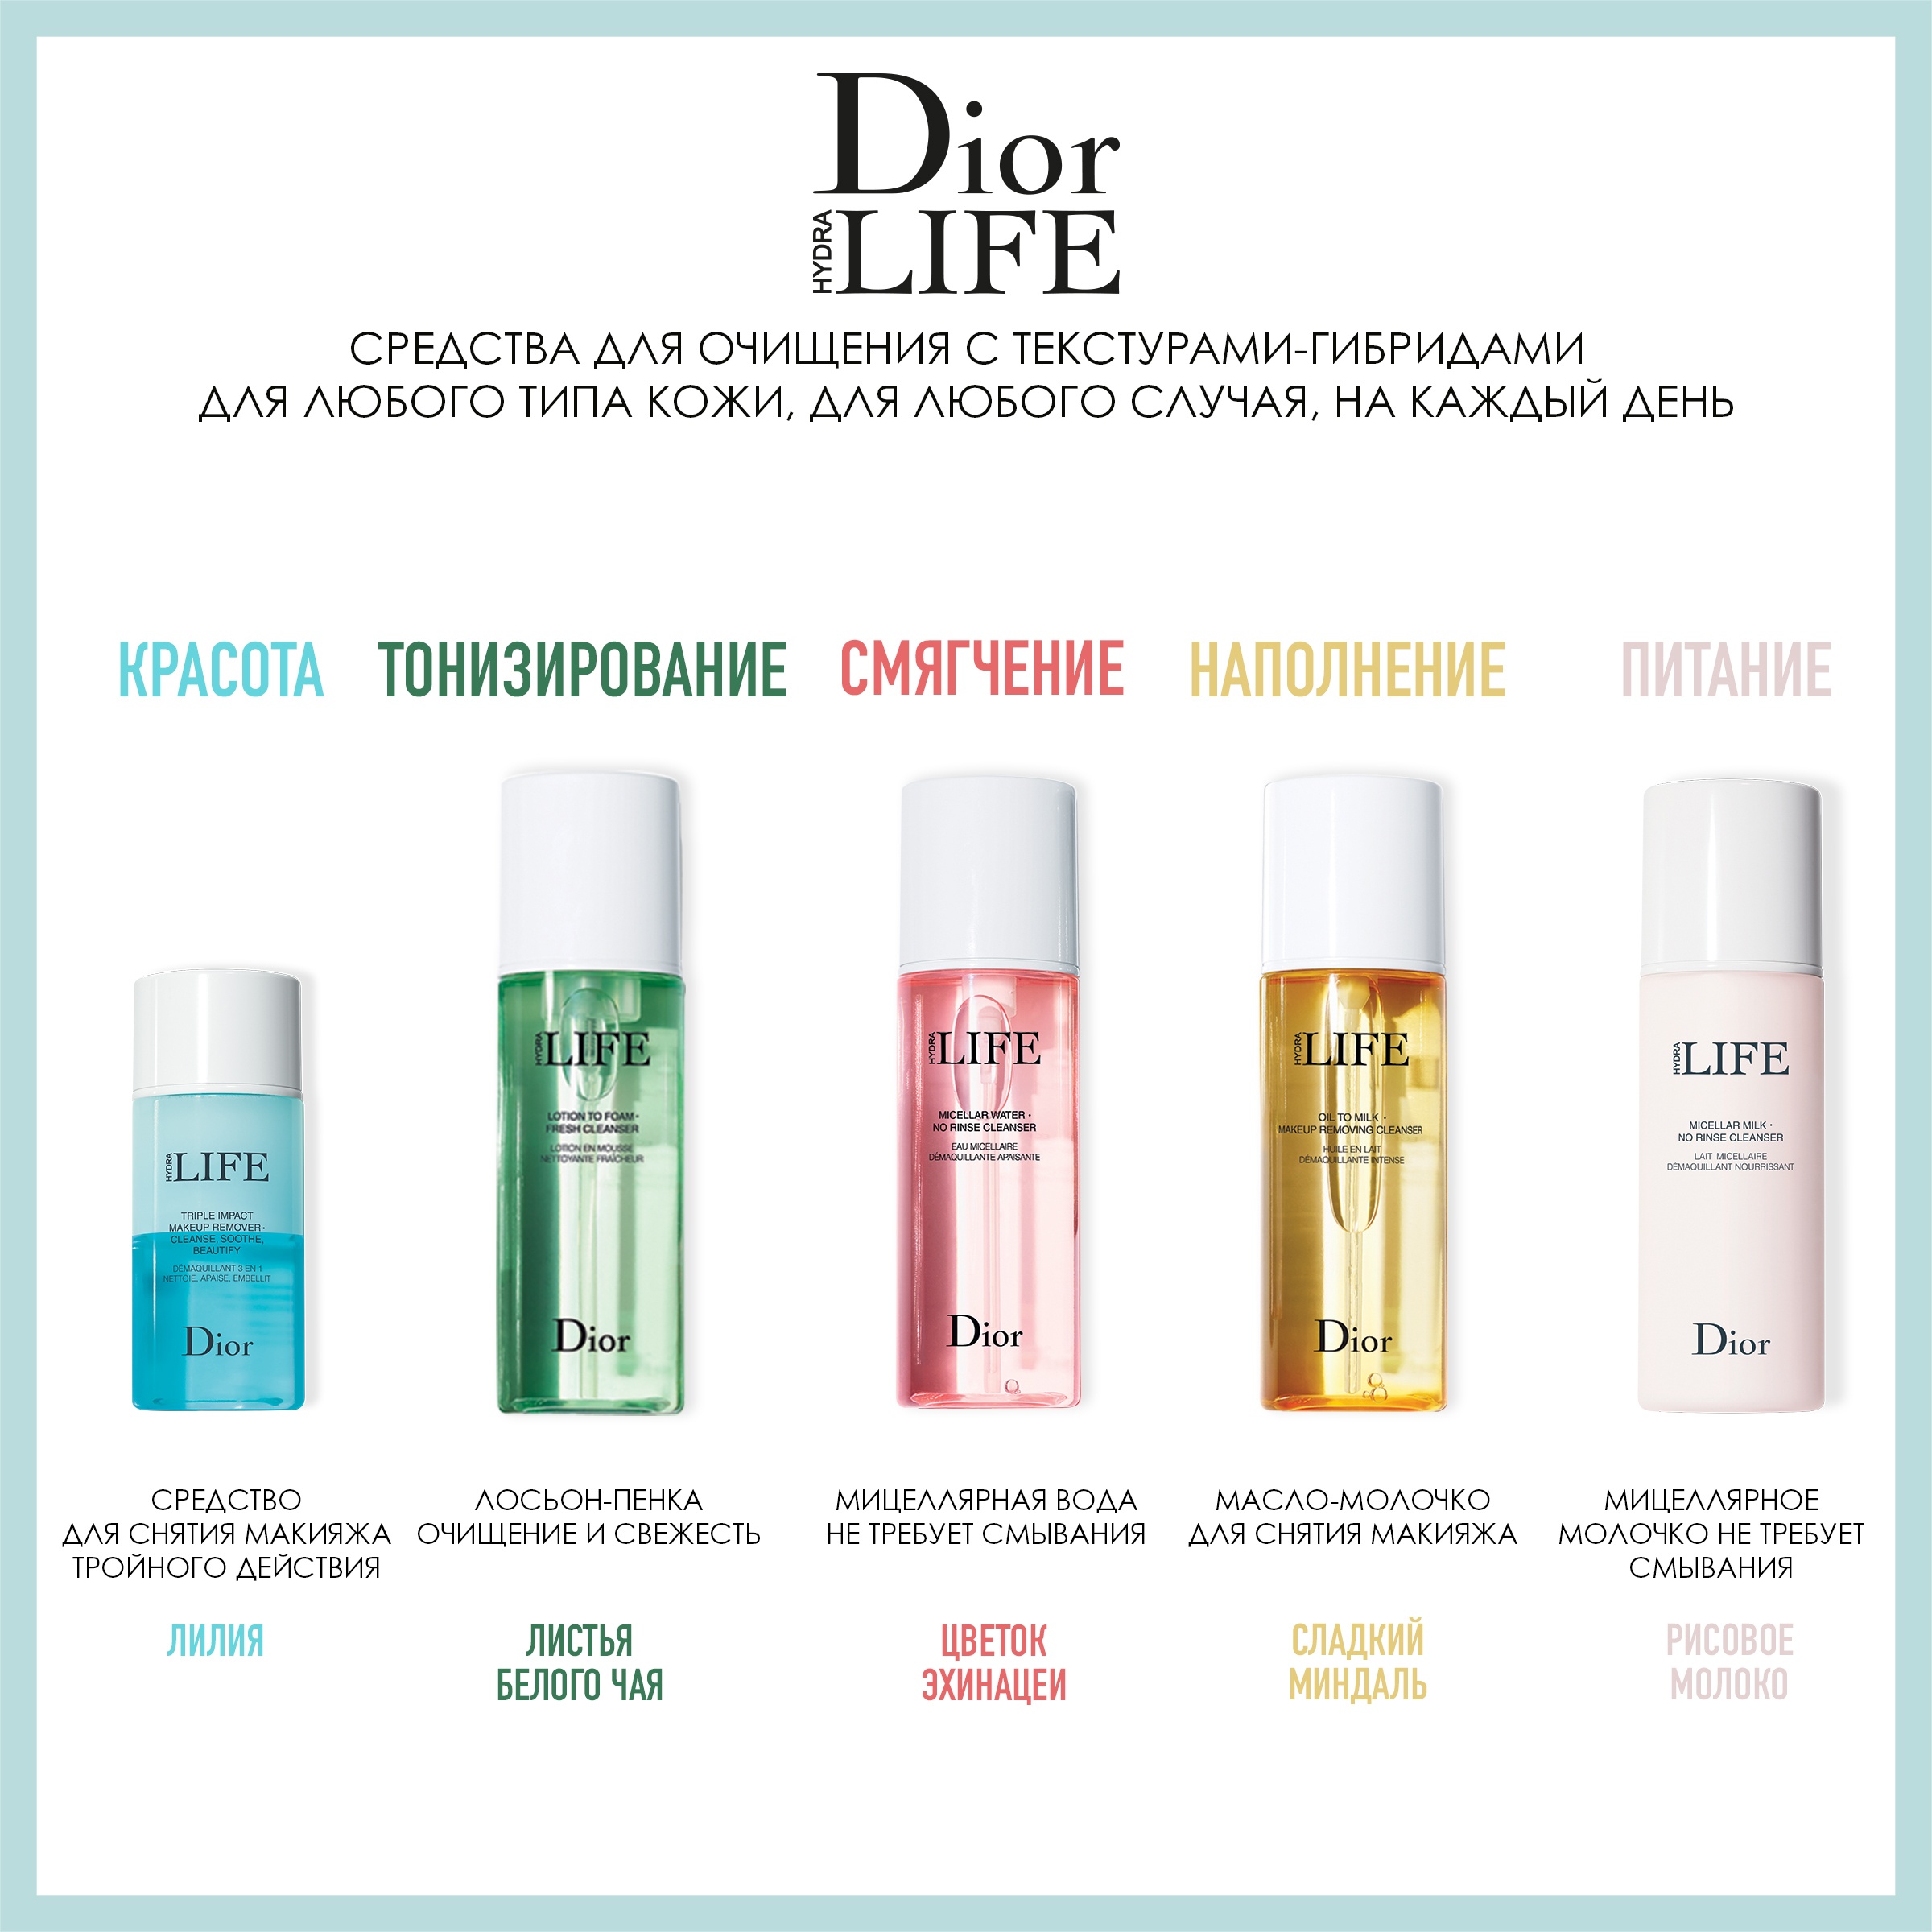 Dior масло очищающее hydra life отзывы tor browser 2014 гидра